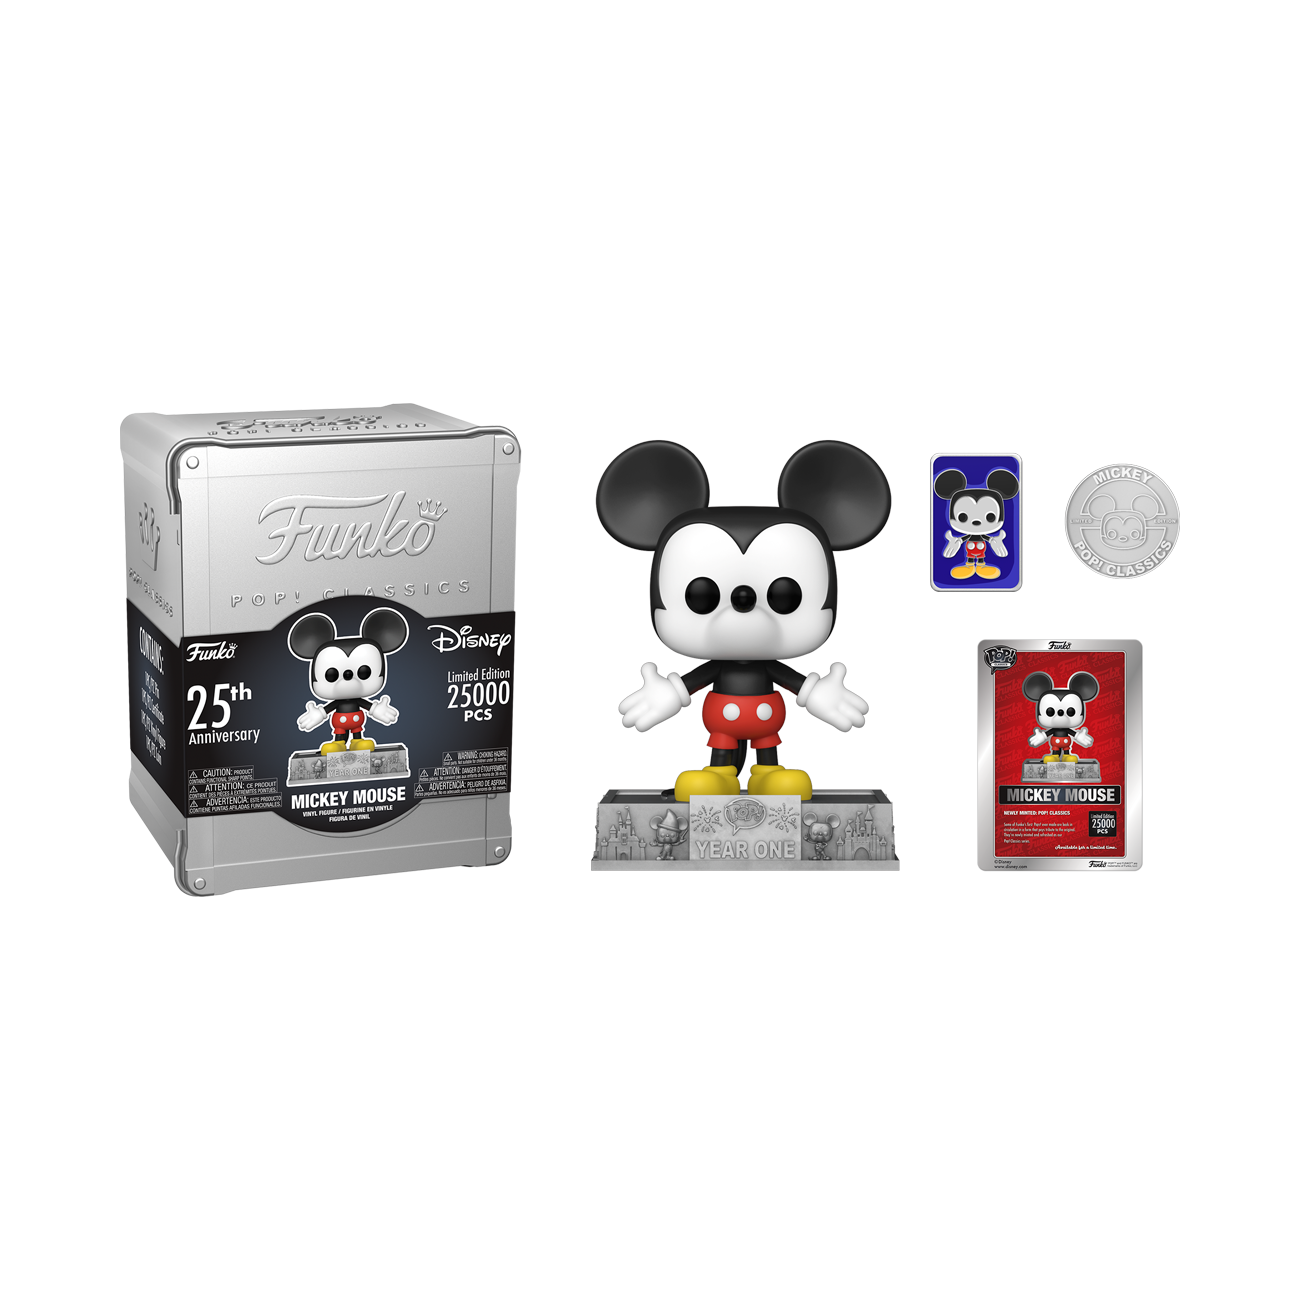 Buy Pop! Classics Mickey Mouse Funko 25th Anniversary at Funko.